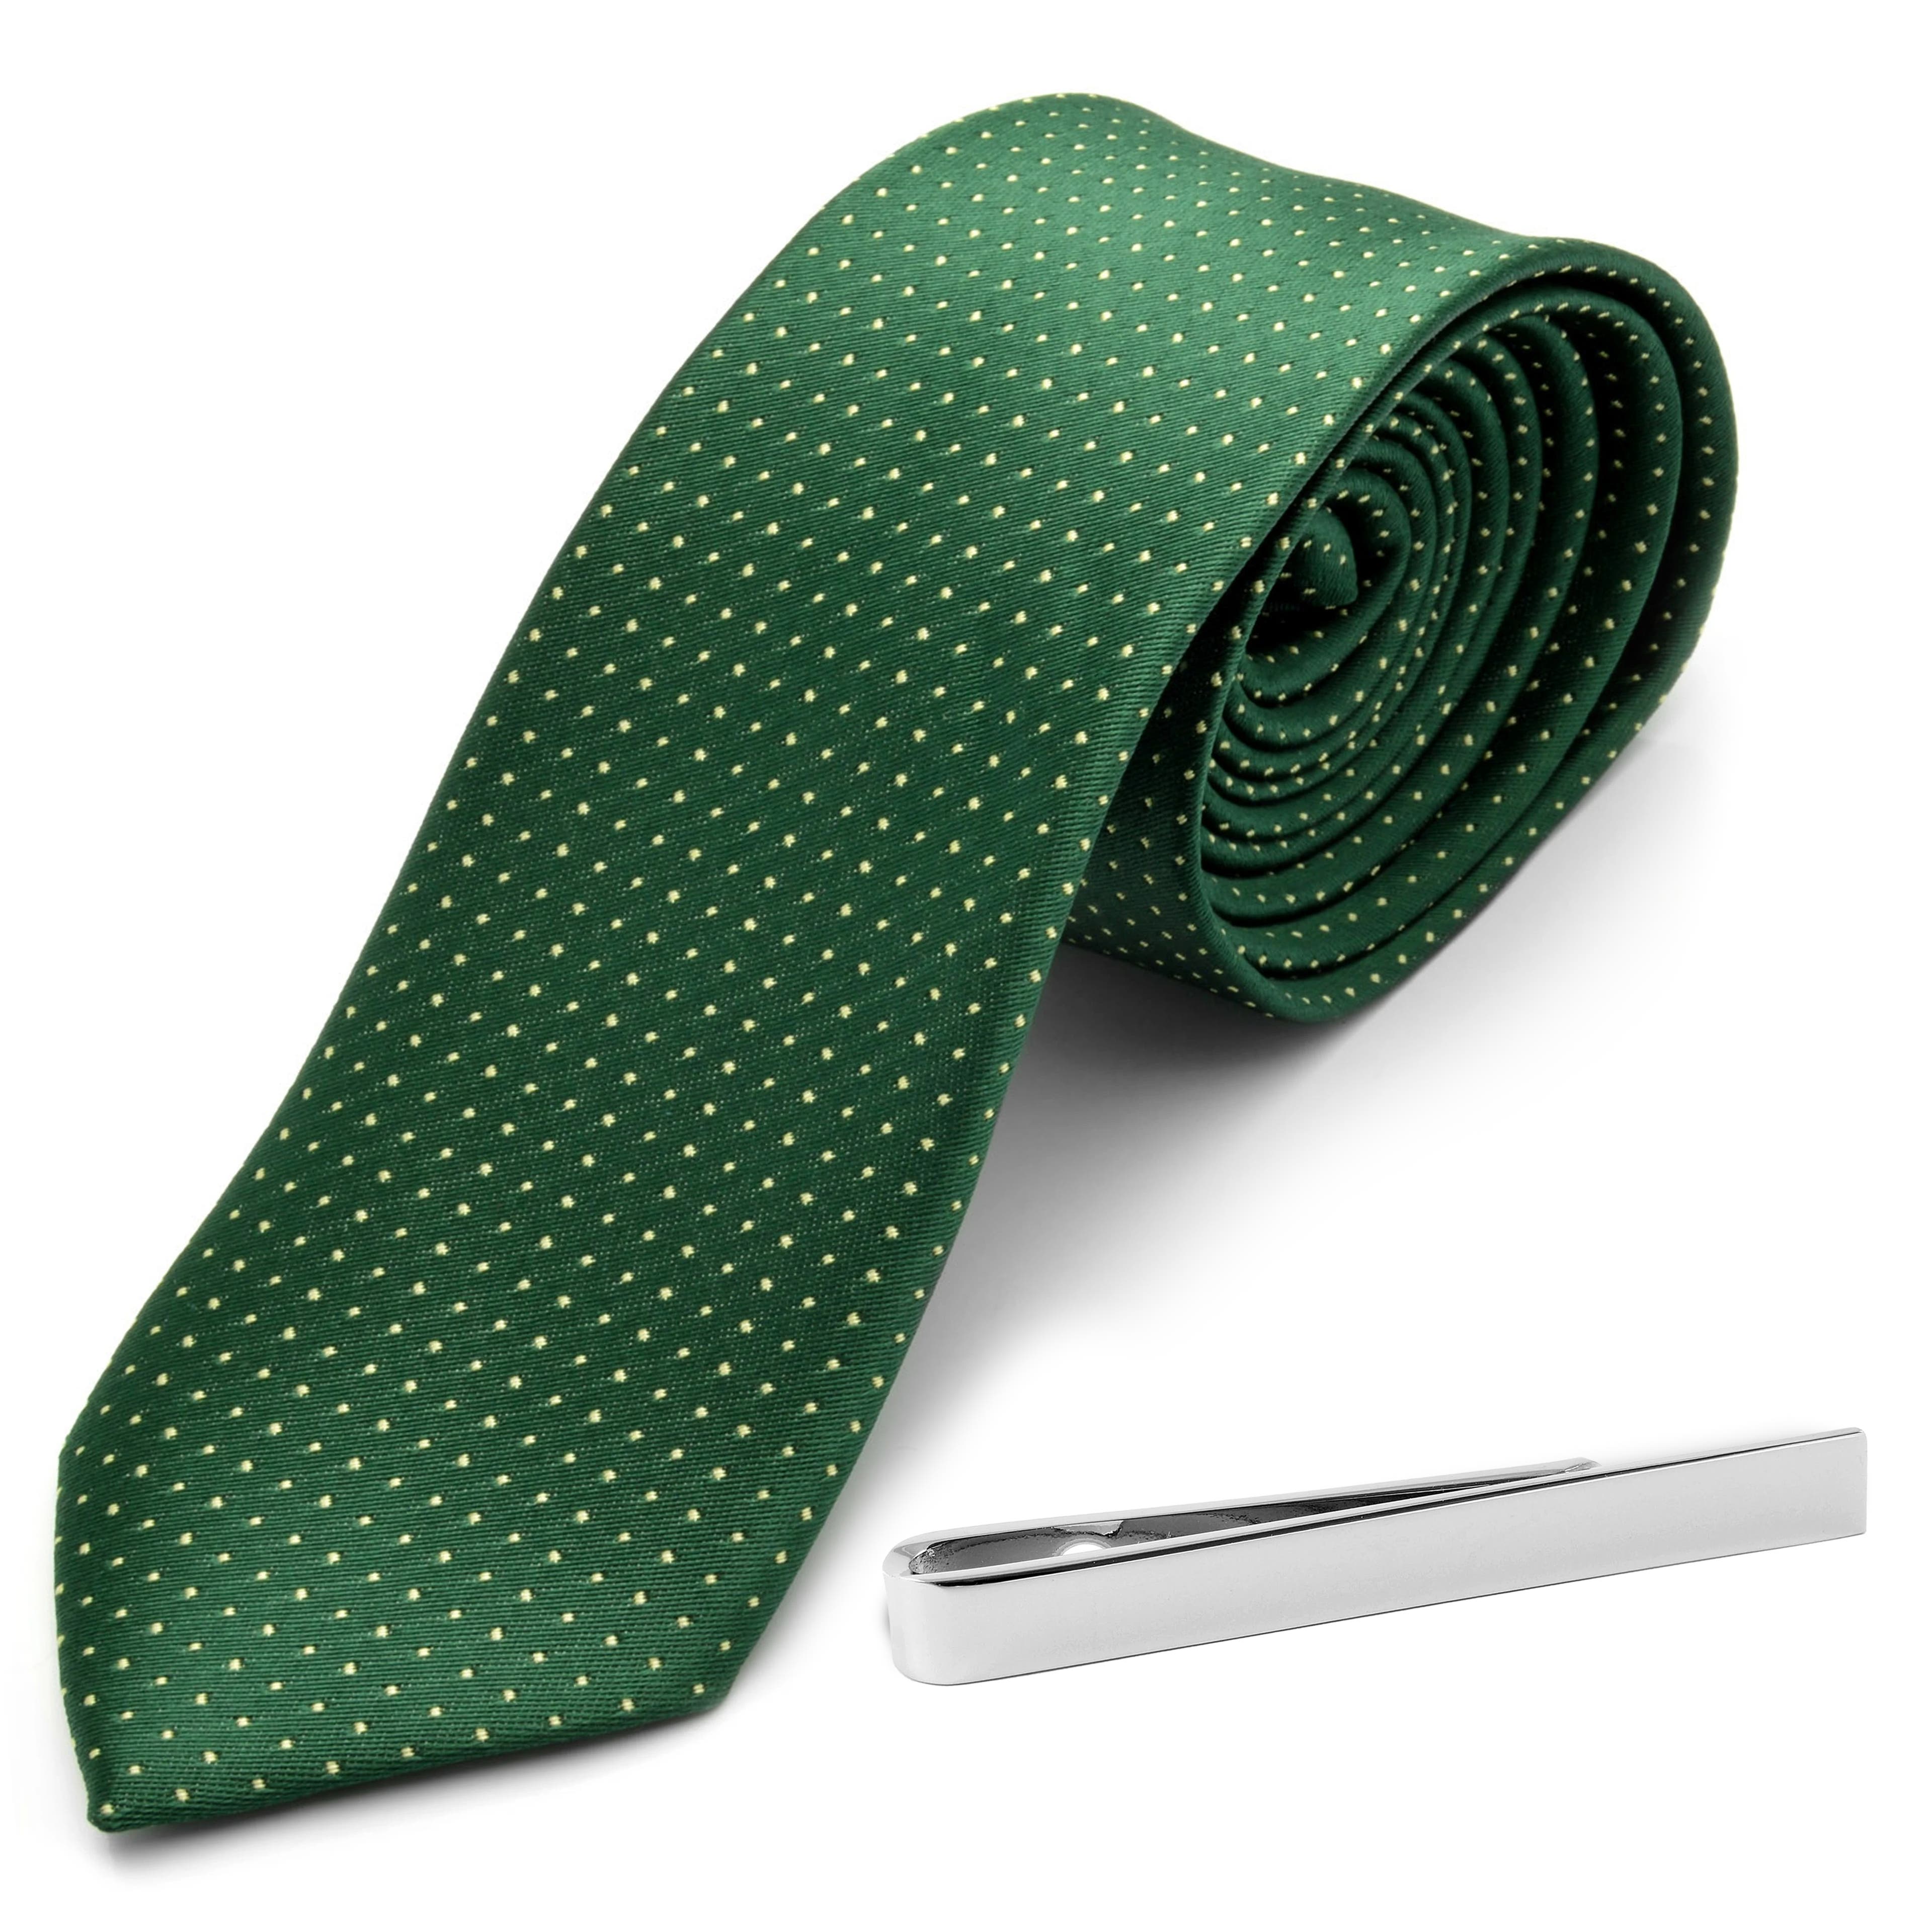 Sada zelenej kravaty s polka bodkami a kravatovej spony v striebornej farbe